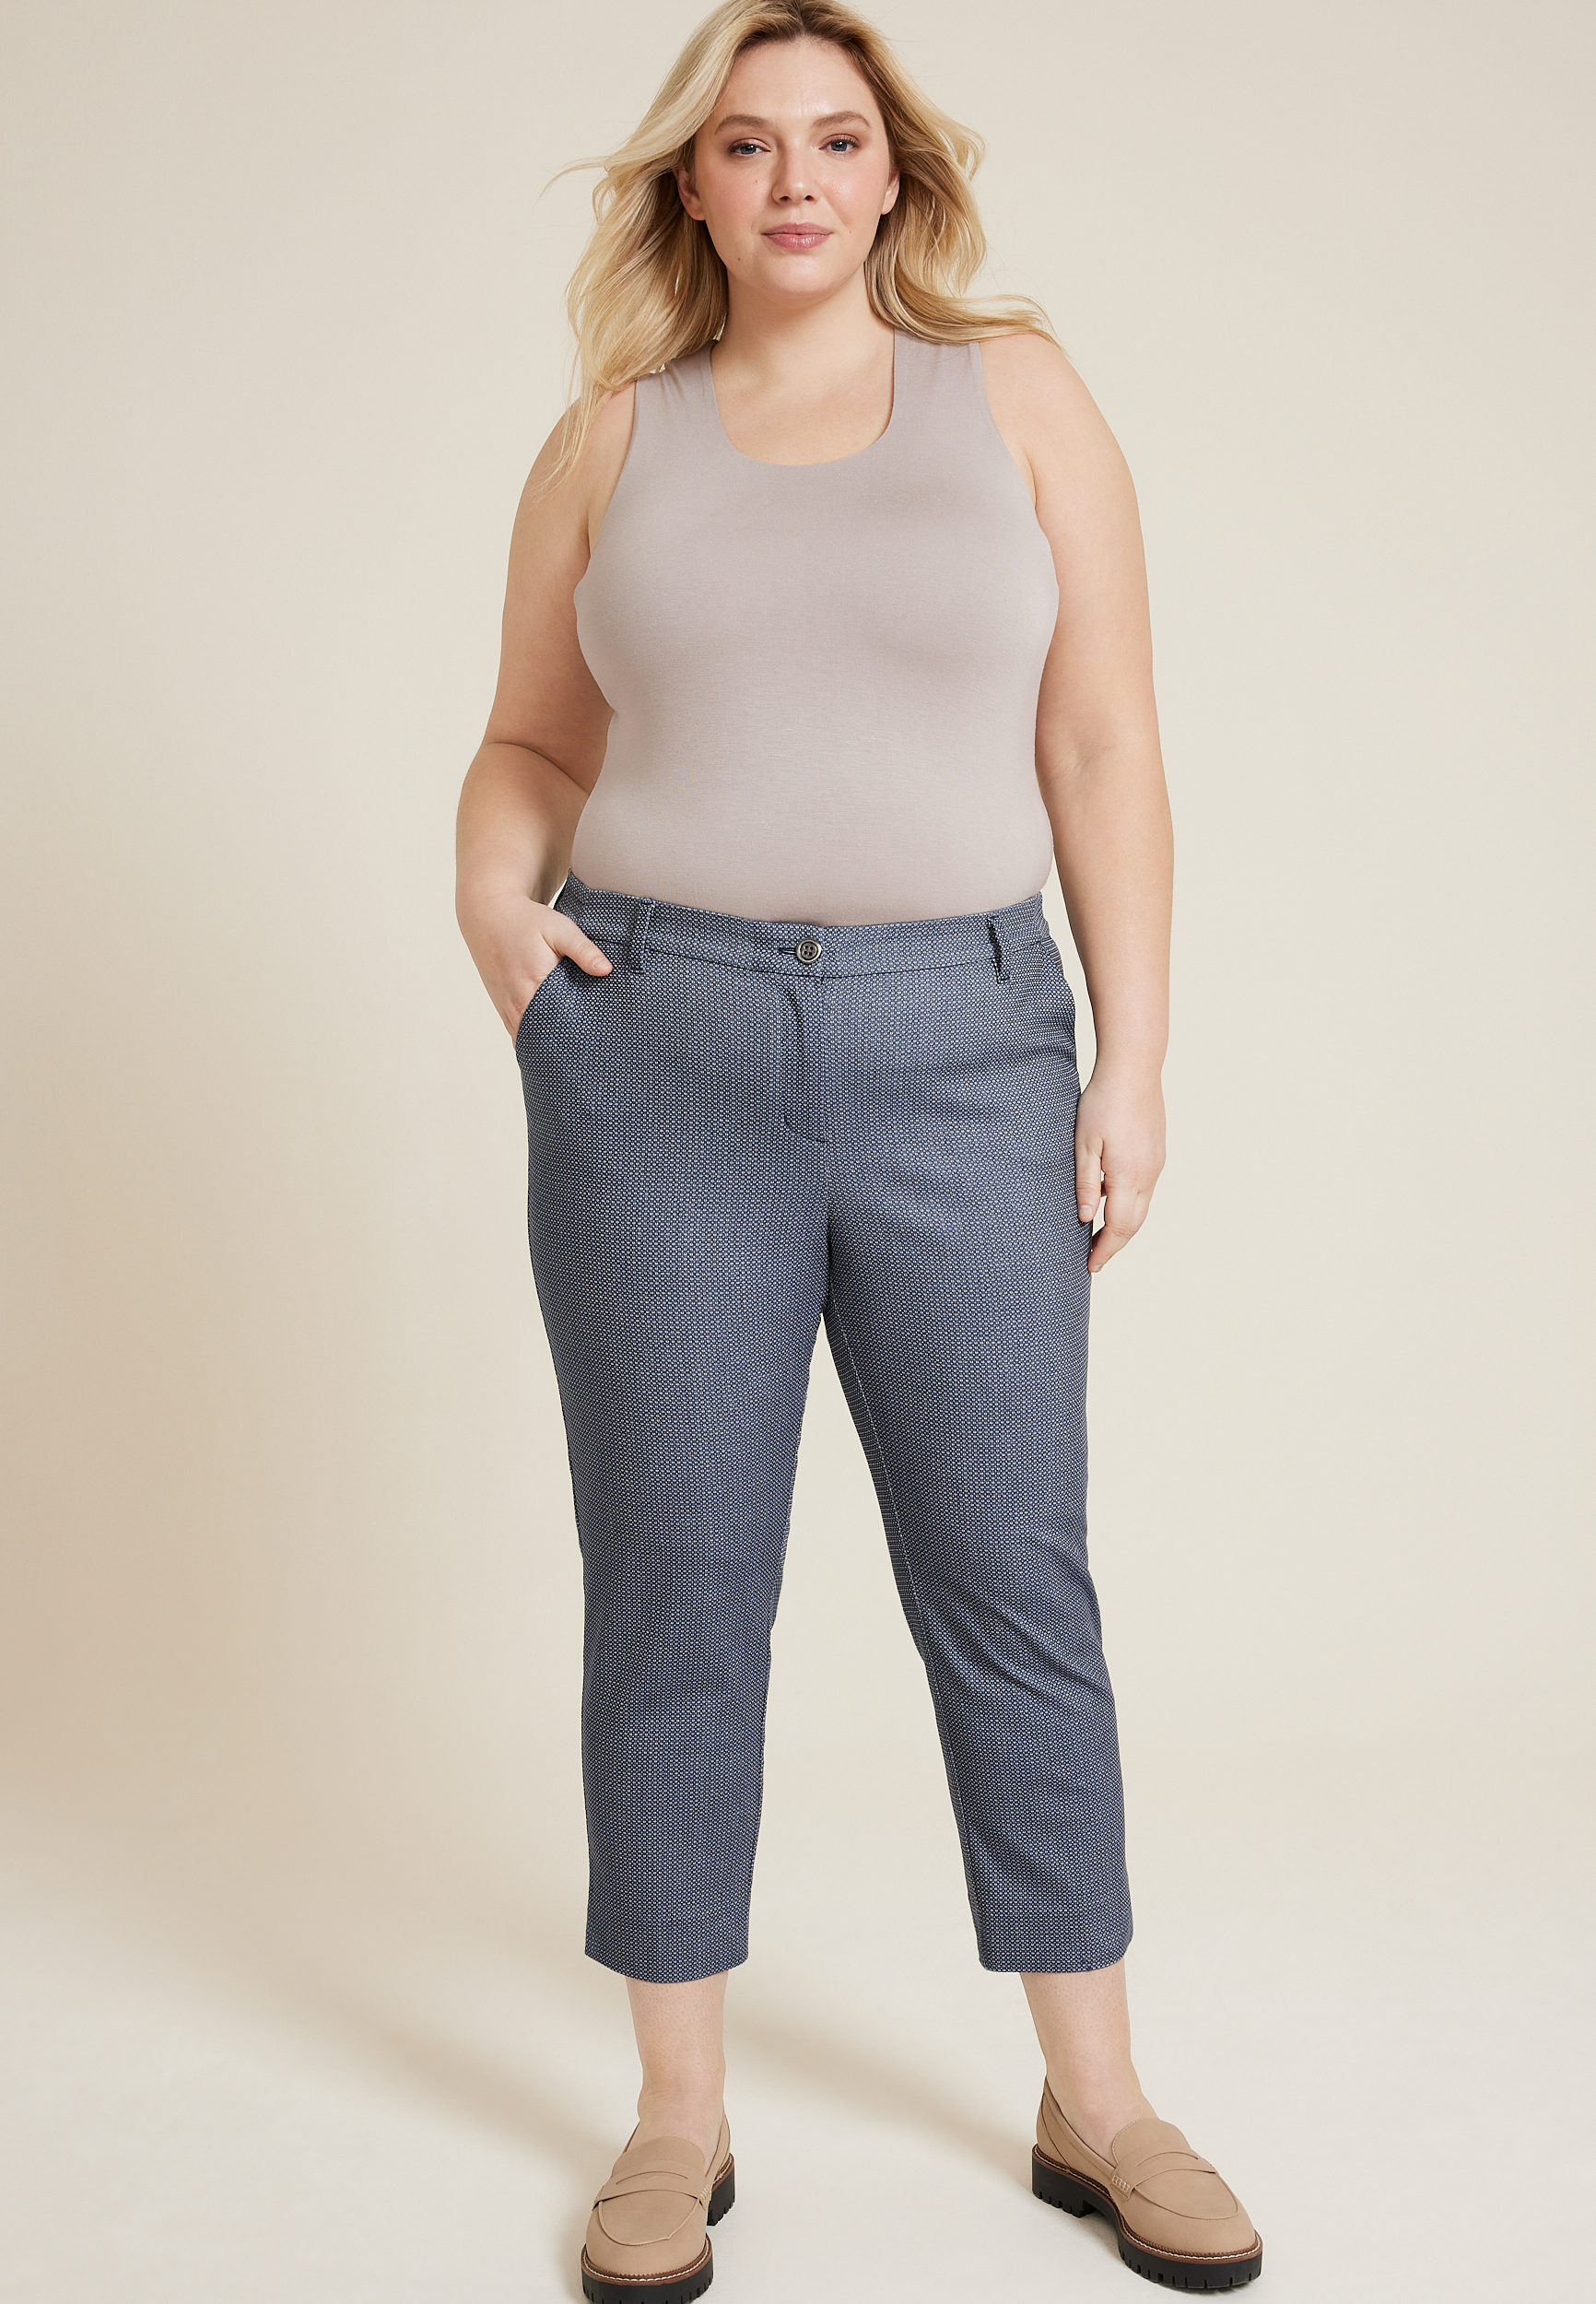 PS553-01-20 Women Plus Size Capri Jeans - - Size 20